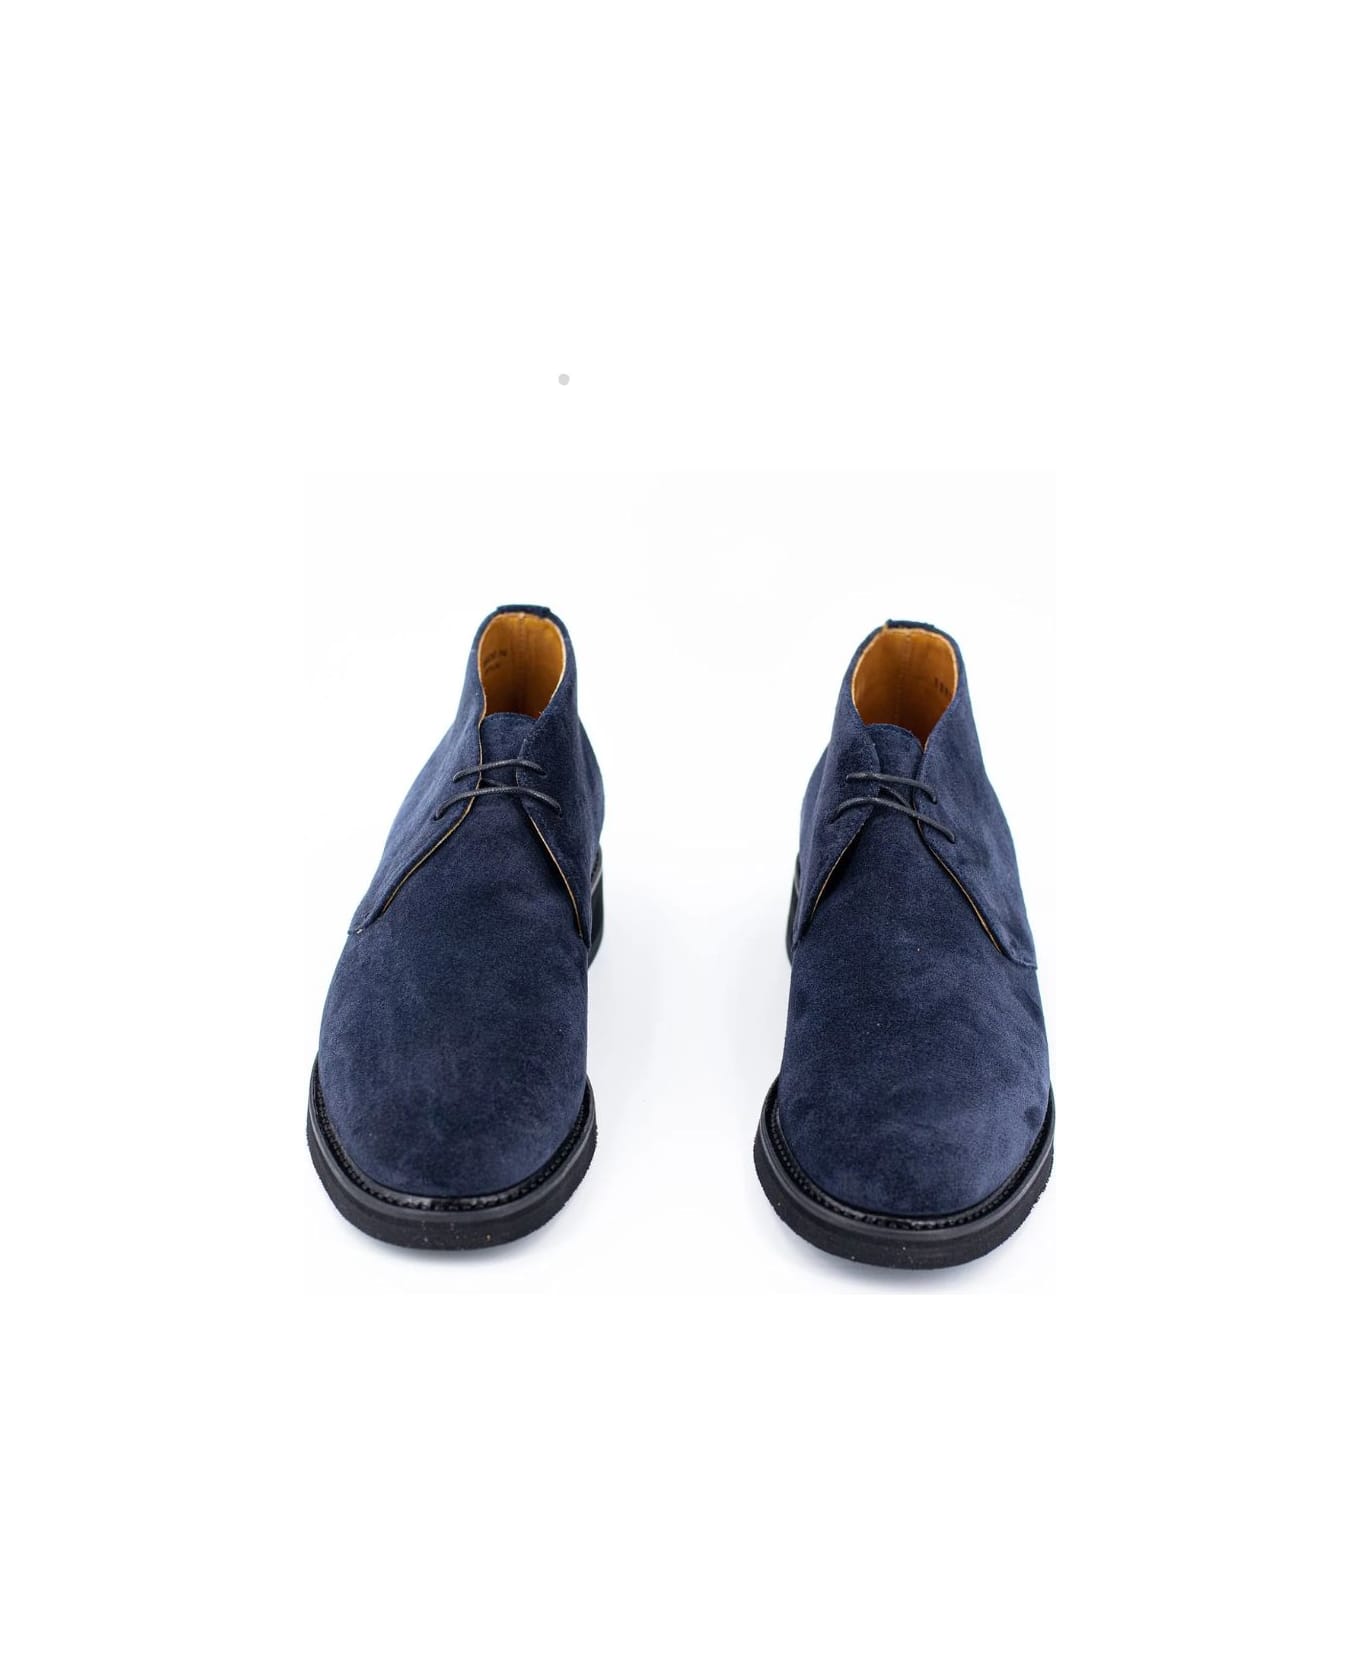 Berwick 1707 Repello Gum Oil Lace Up Shoes - Baltic ブーツ